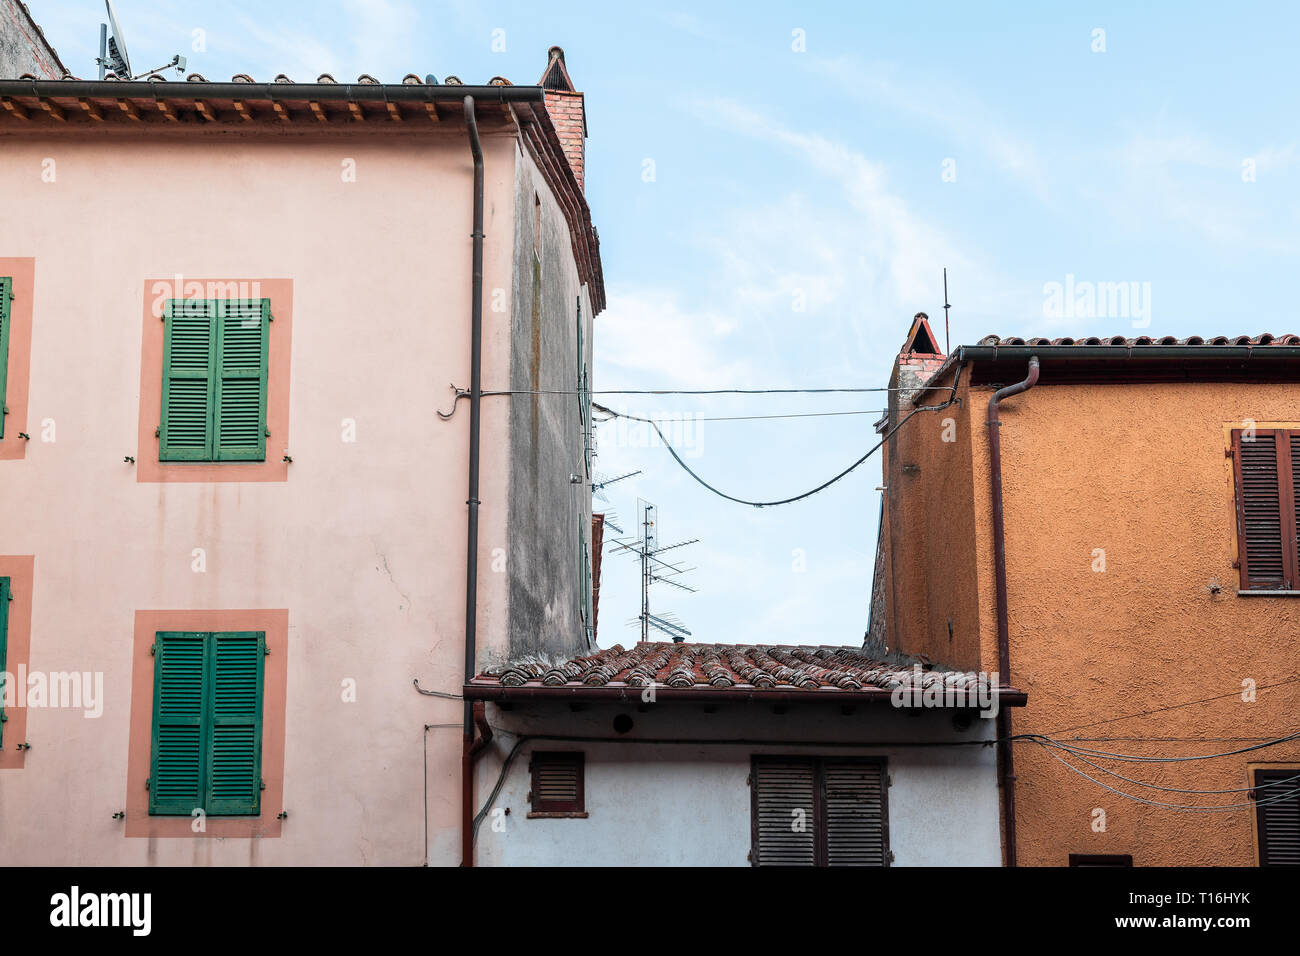 Chiusi, Italien Straße in kleinen mittelalterlichen Stadt Dorf in Umbrien in der Nähe der Toskana Ansicht von Apartment Gebäuden im Sommer Tag mit niemand Rosa ora Stockfoto